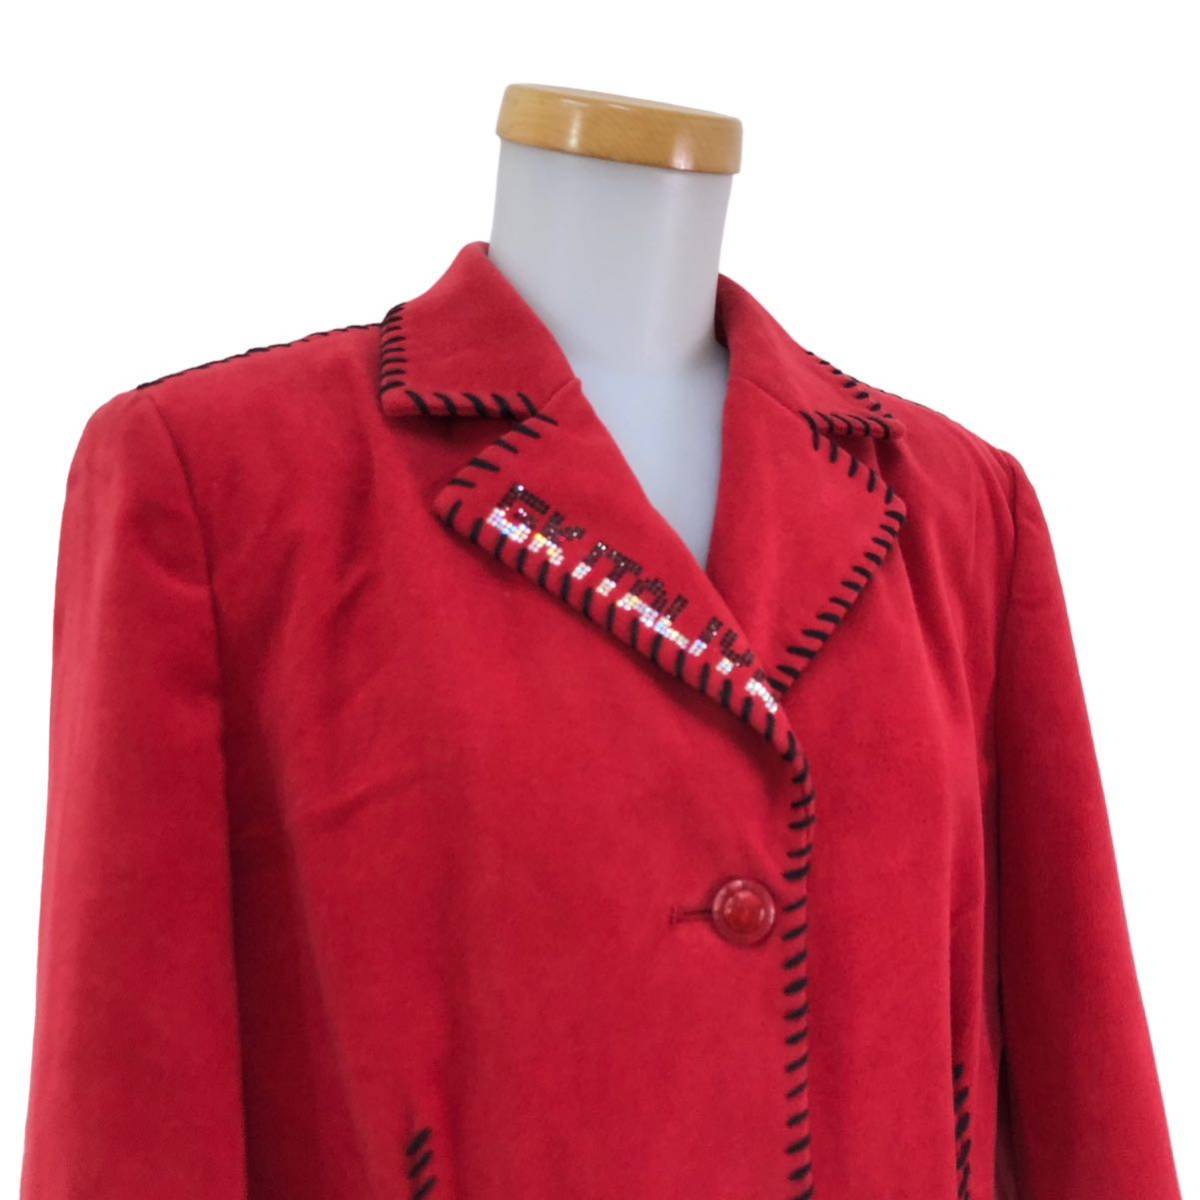 NB176 日本製 伊太利屋 イタリヤ テーラードジャケット デザイン ジャケット アウター 上着 羽織り 長袖 レッド 赤 レディース 9_画像3